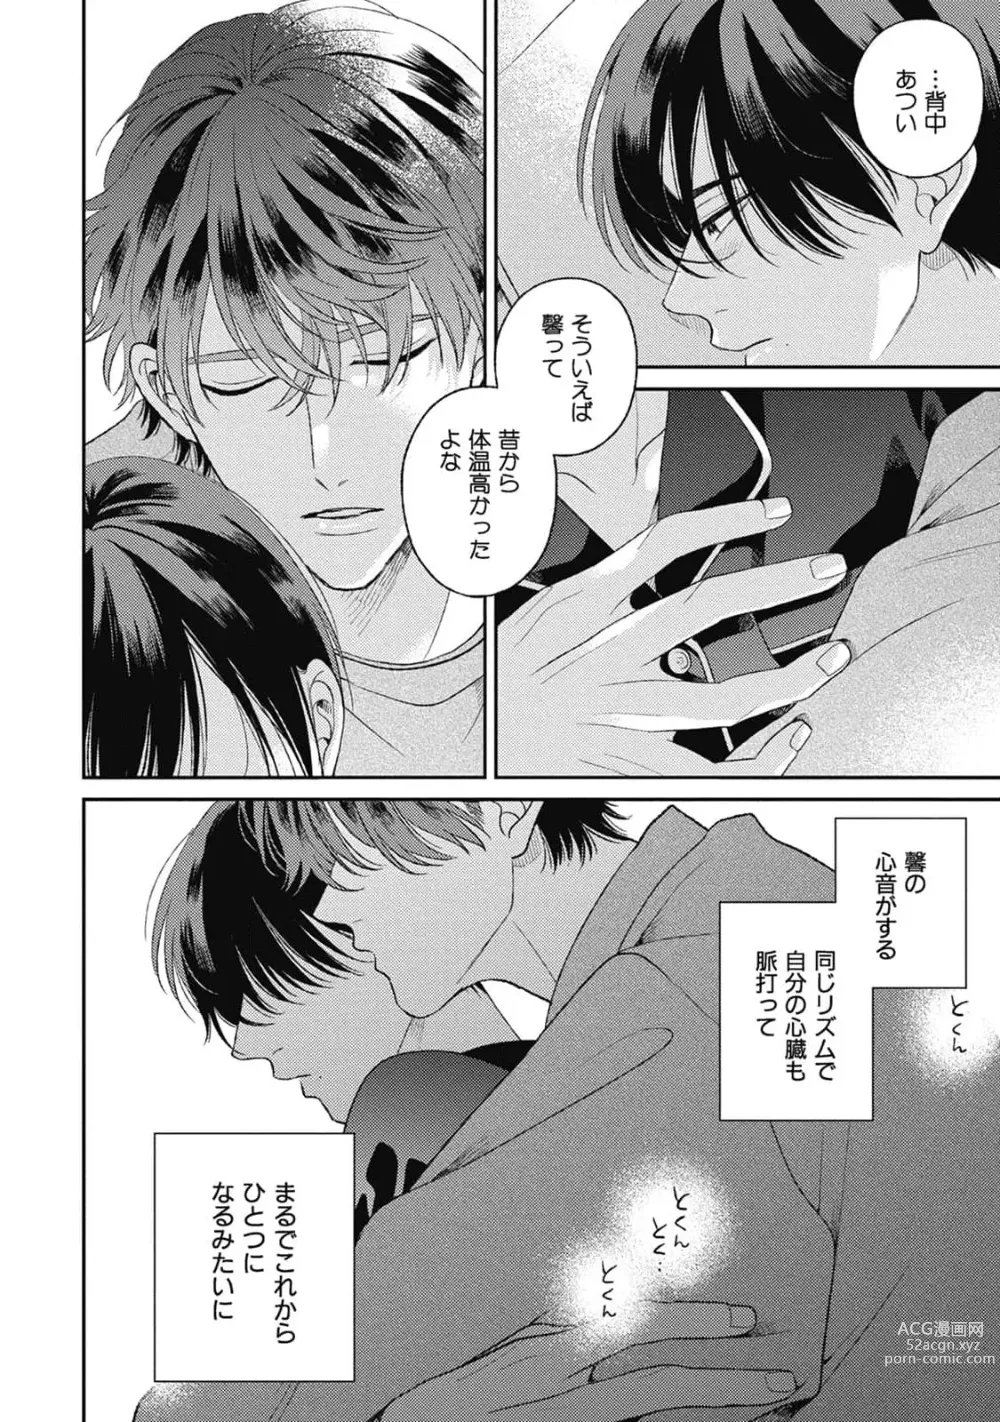 Page 38 of manga Bokura no Shuumatsu